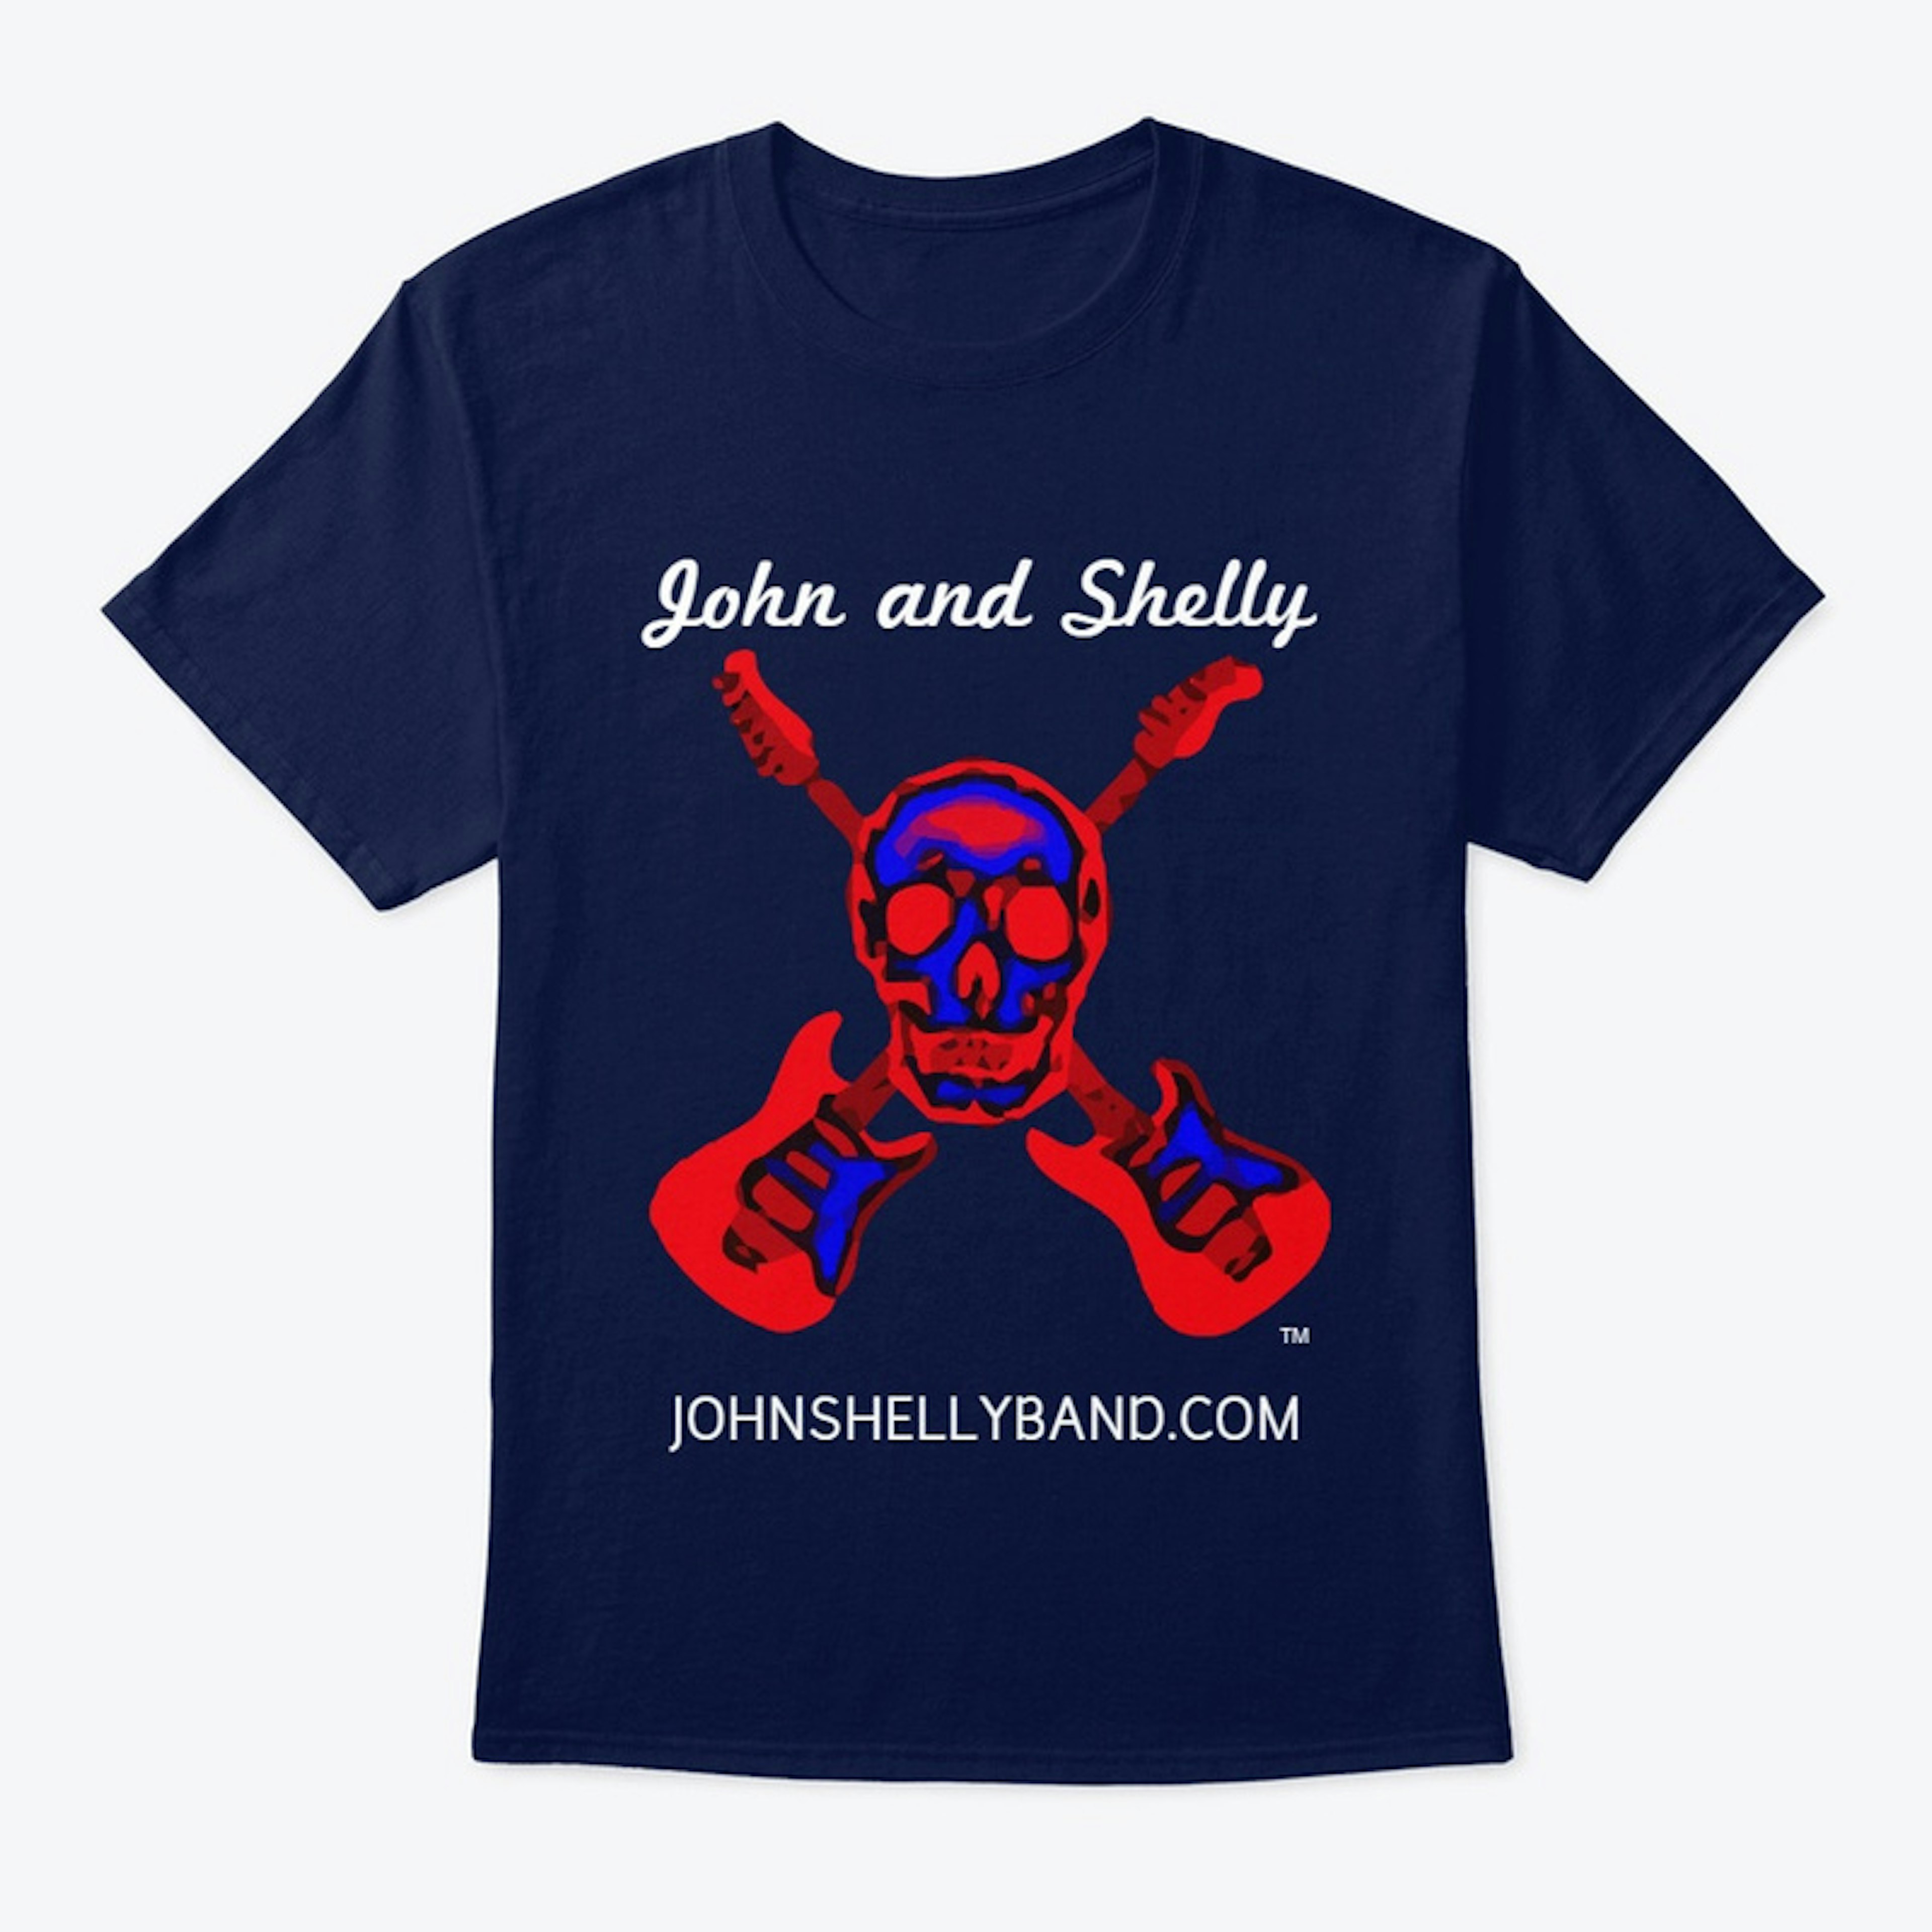 JOHN AND SHELLY